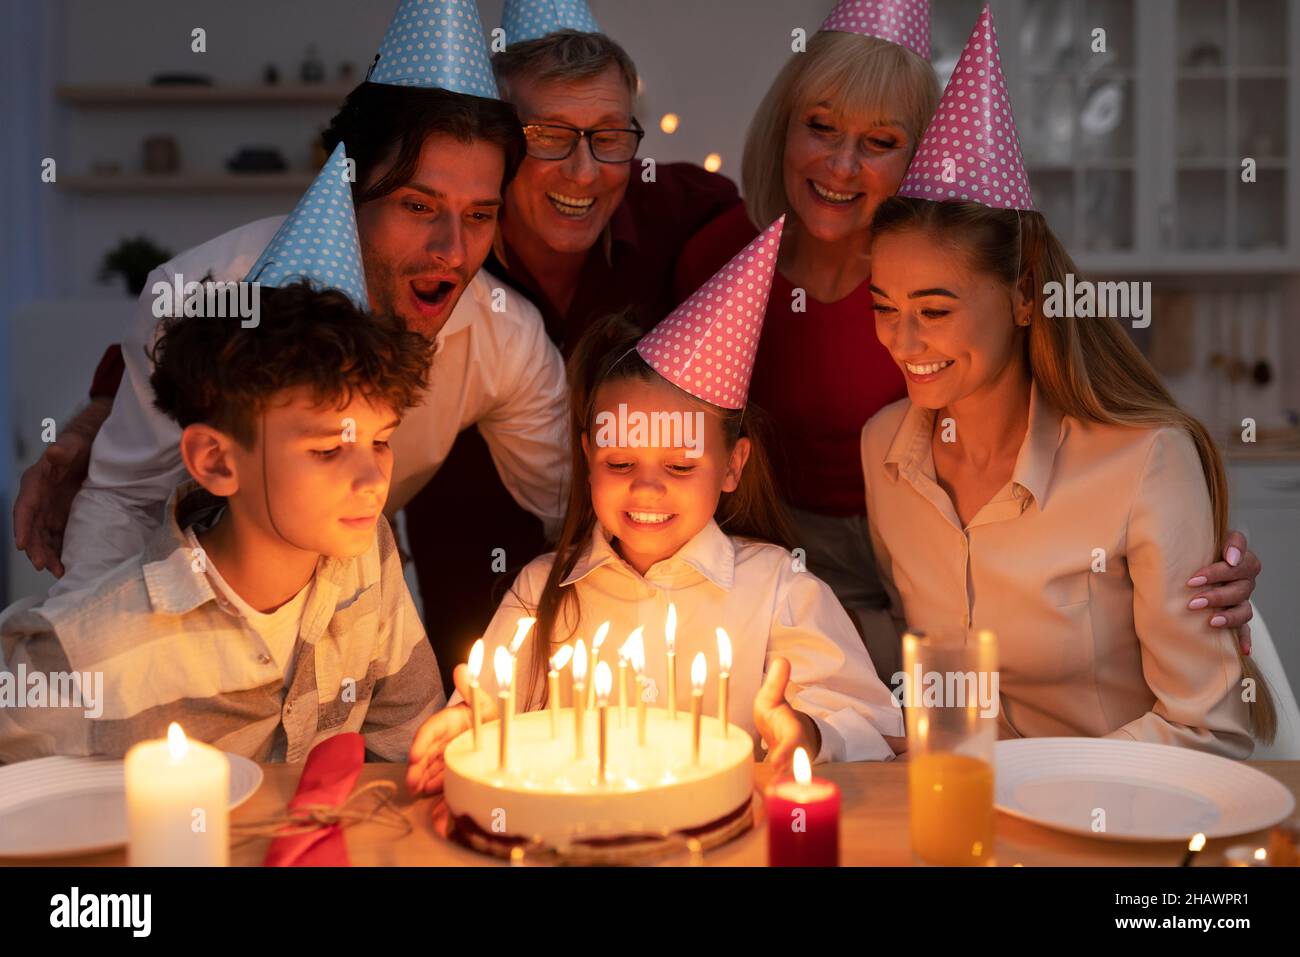 Carina bambina che riceve la torta di compleanno yummy con candele accese per il compleanno, festeggiando la vacanza con la famiglia estesa Foto Stock